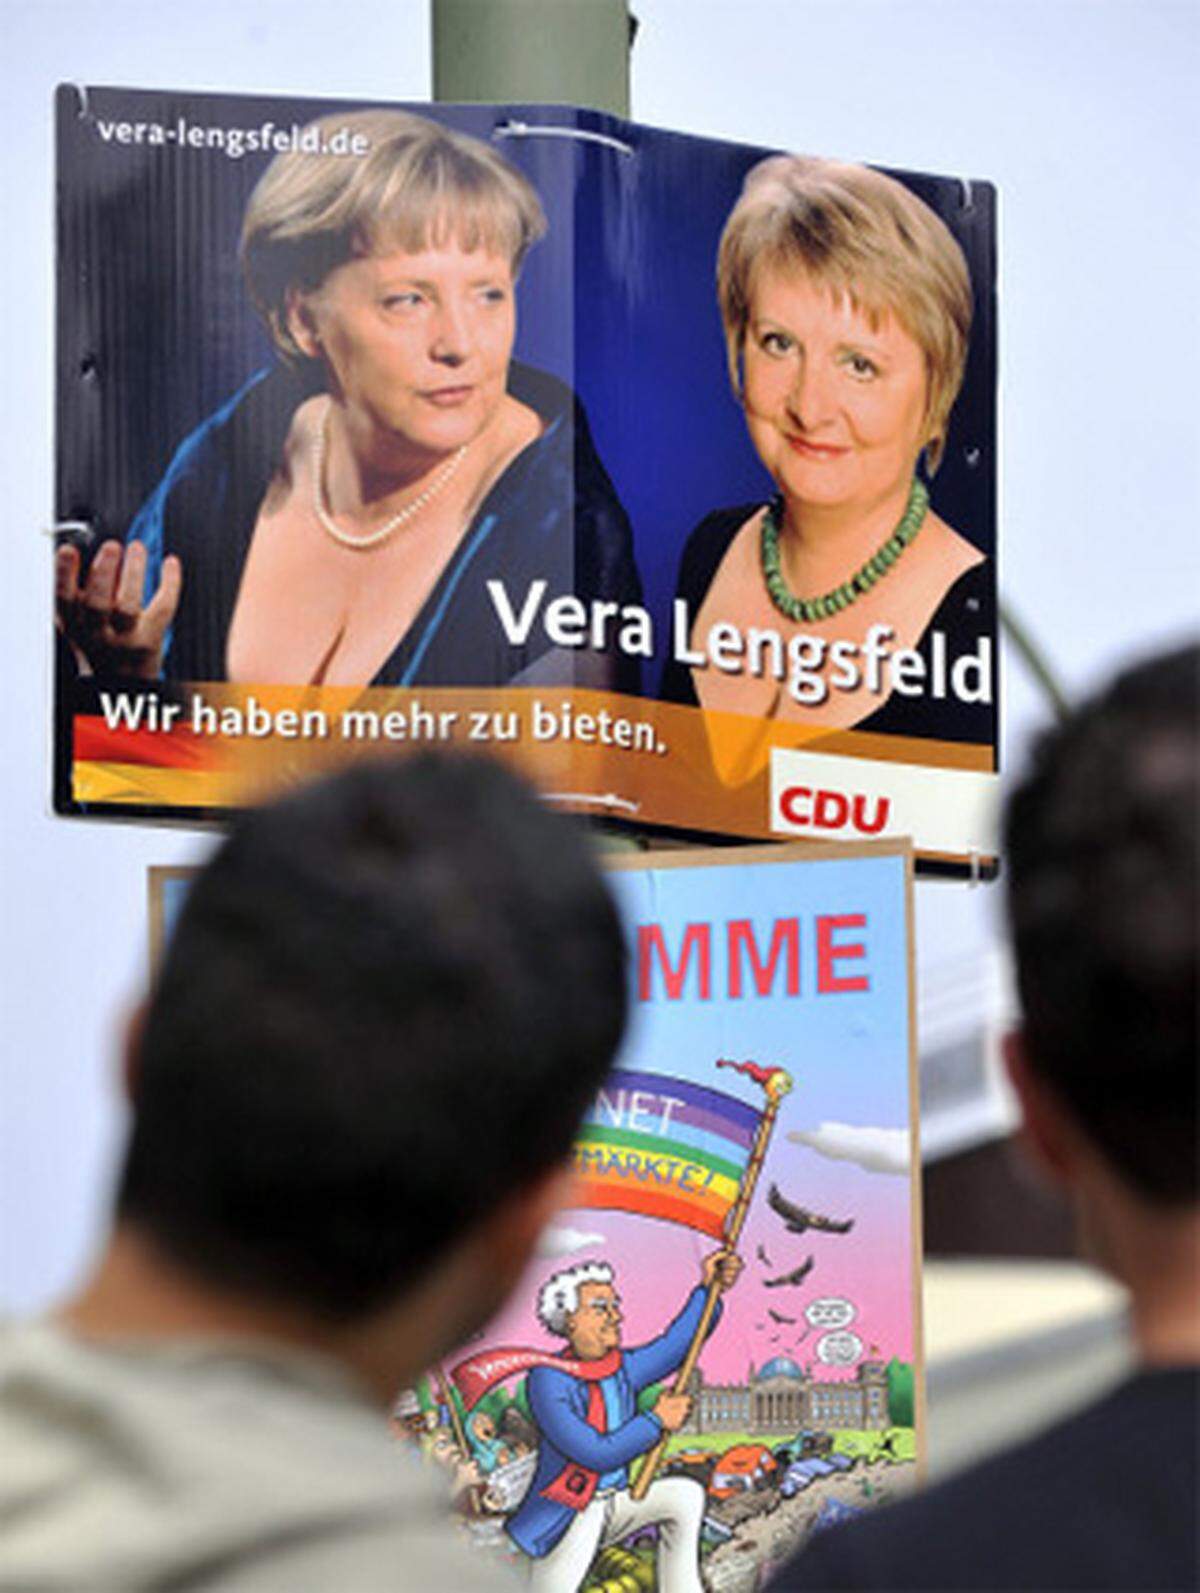 Das Plakat löste einen deftigen Streit über Sexismus, Prüderie und doppelbödige Wahlwerbung aus. Auch in der CDU-Zentrale zeigte man sich nicht sonderlich amüsiert. Ein CDU-Sprecher befand knapp: "Das ist nicht mit uns abgestimmt." Auch mit der Kanzlerin nicht, wie Lengsfeld freimütig einräumte. Die umstrittenen Wahlplakate der Berliner CDU-Politikerin wurden abgehängt und durch ein neues Motiv ersetzt.